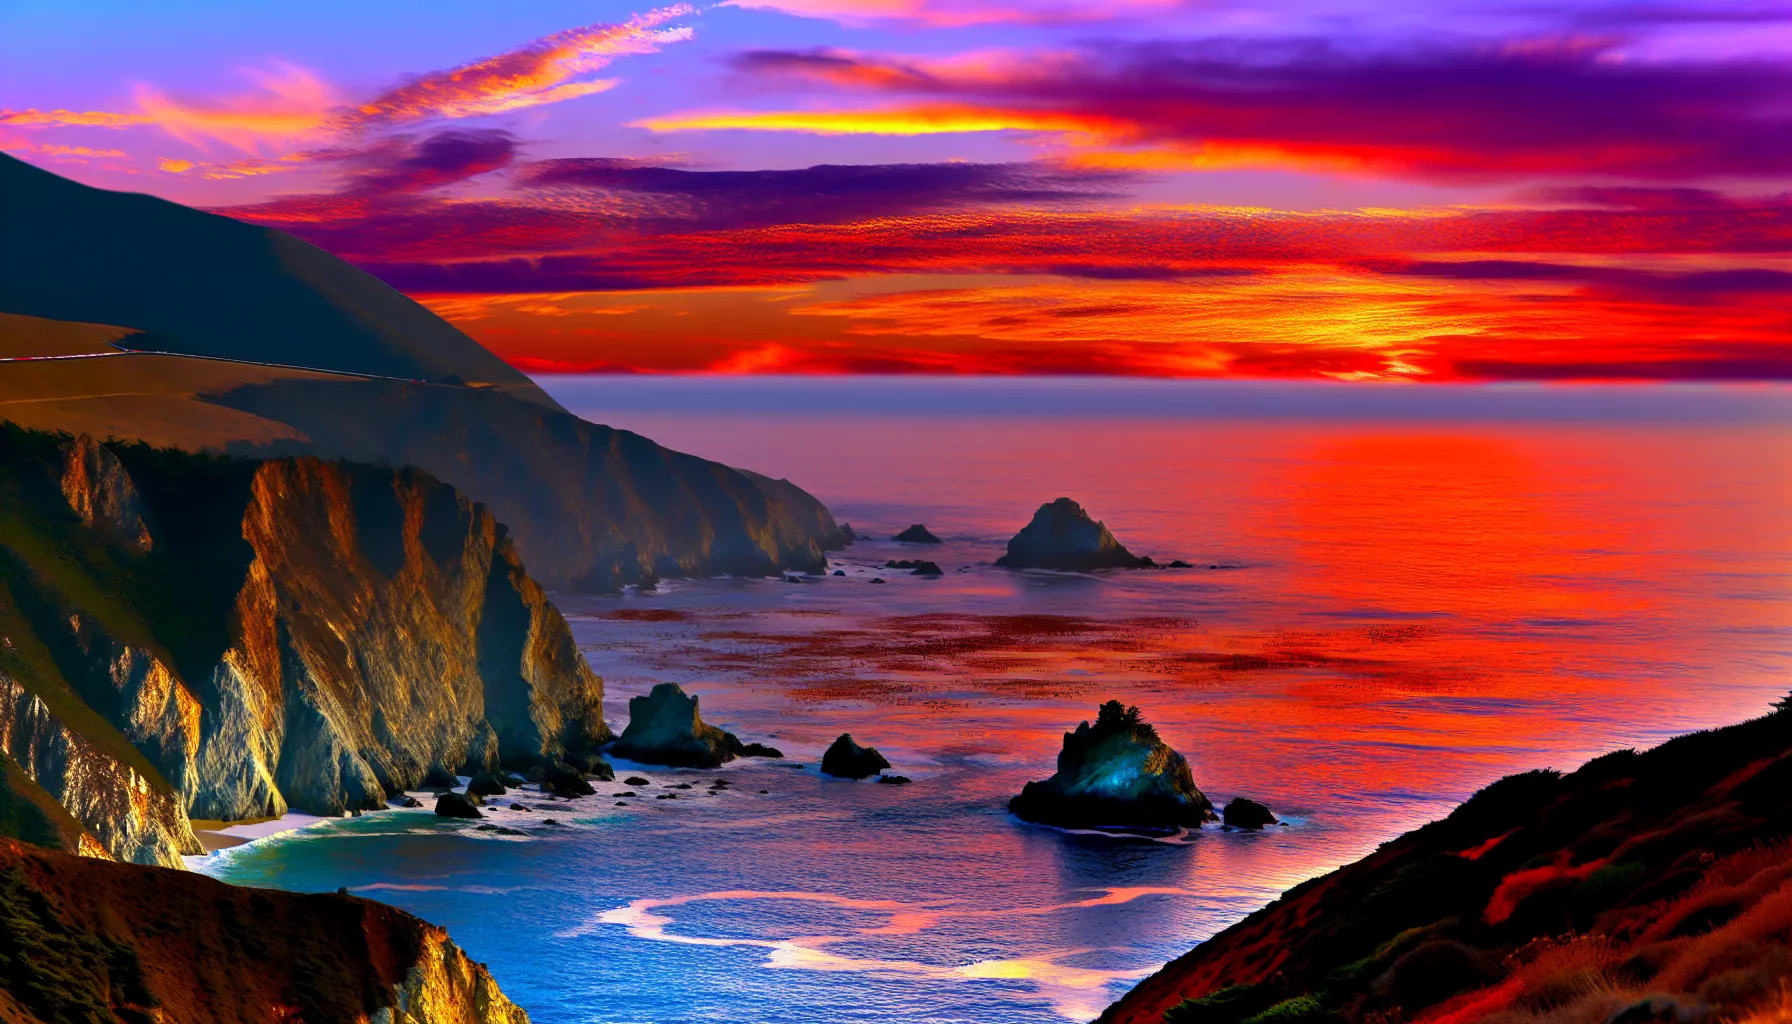 Big Sur coastline at sunset